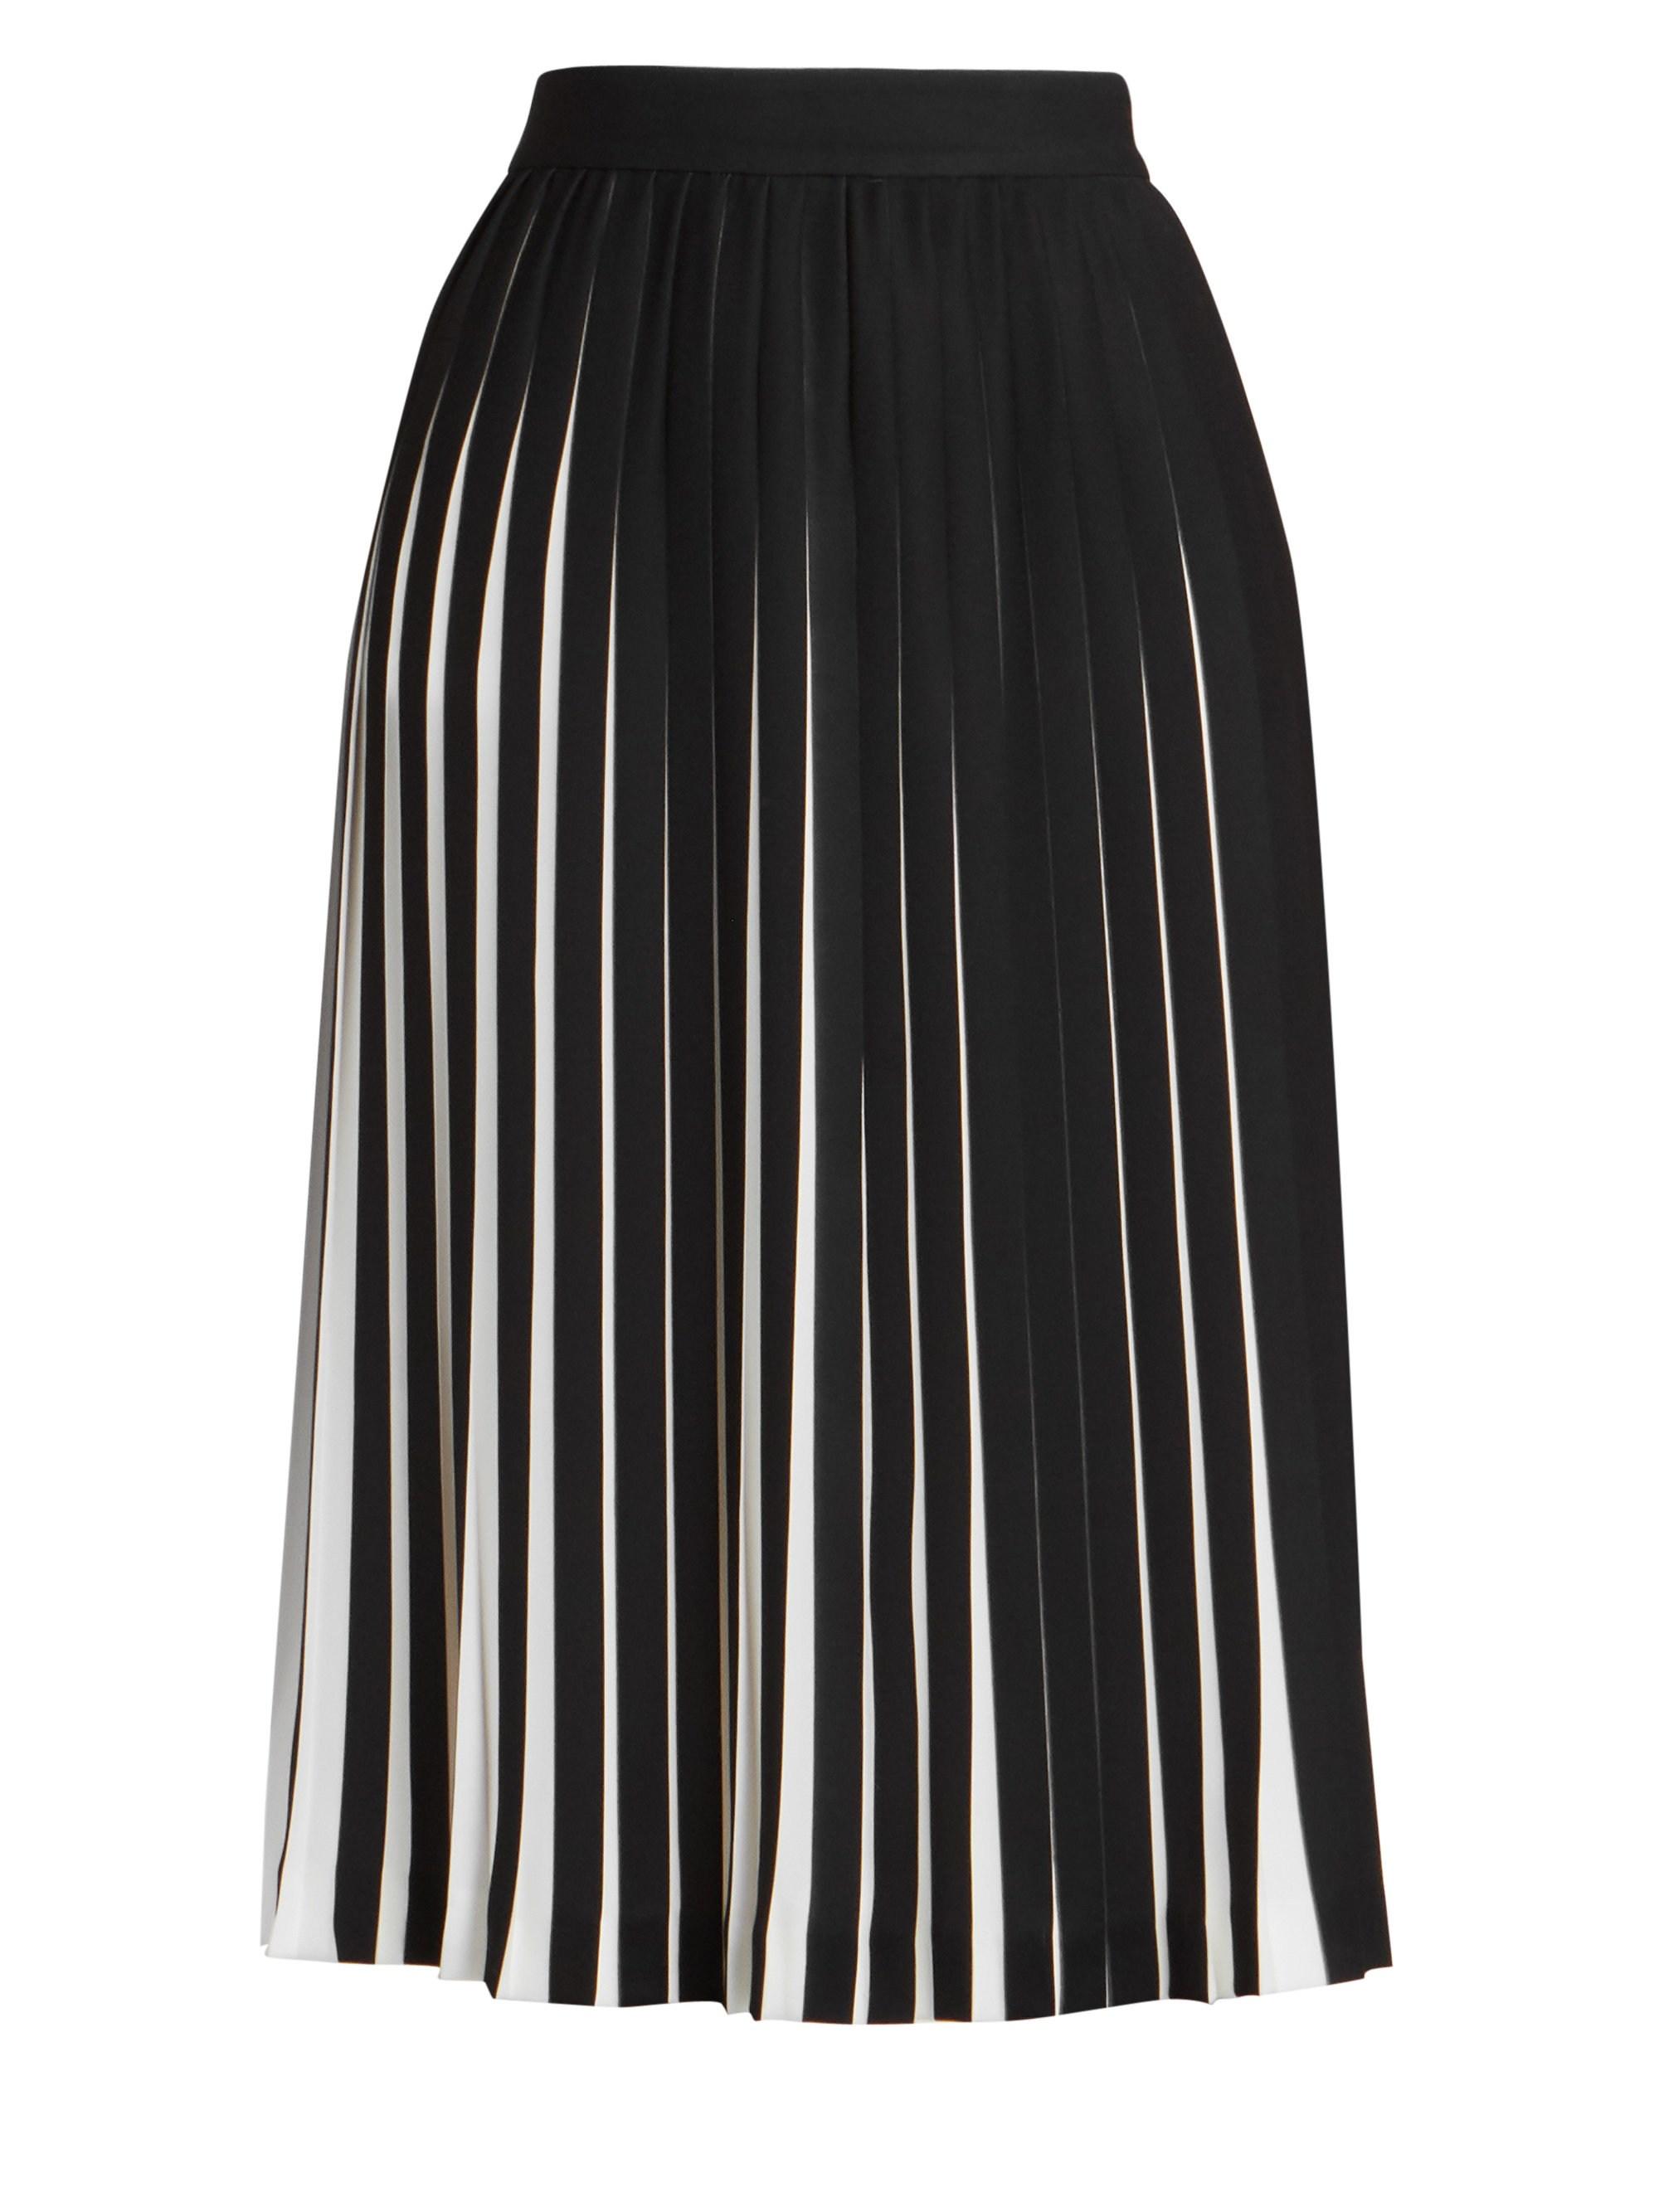 Maison Margiela Pleated Skirt in Black | Lyst